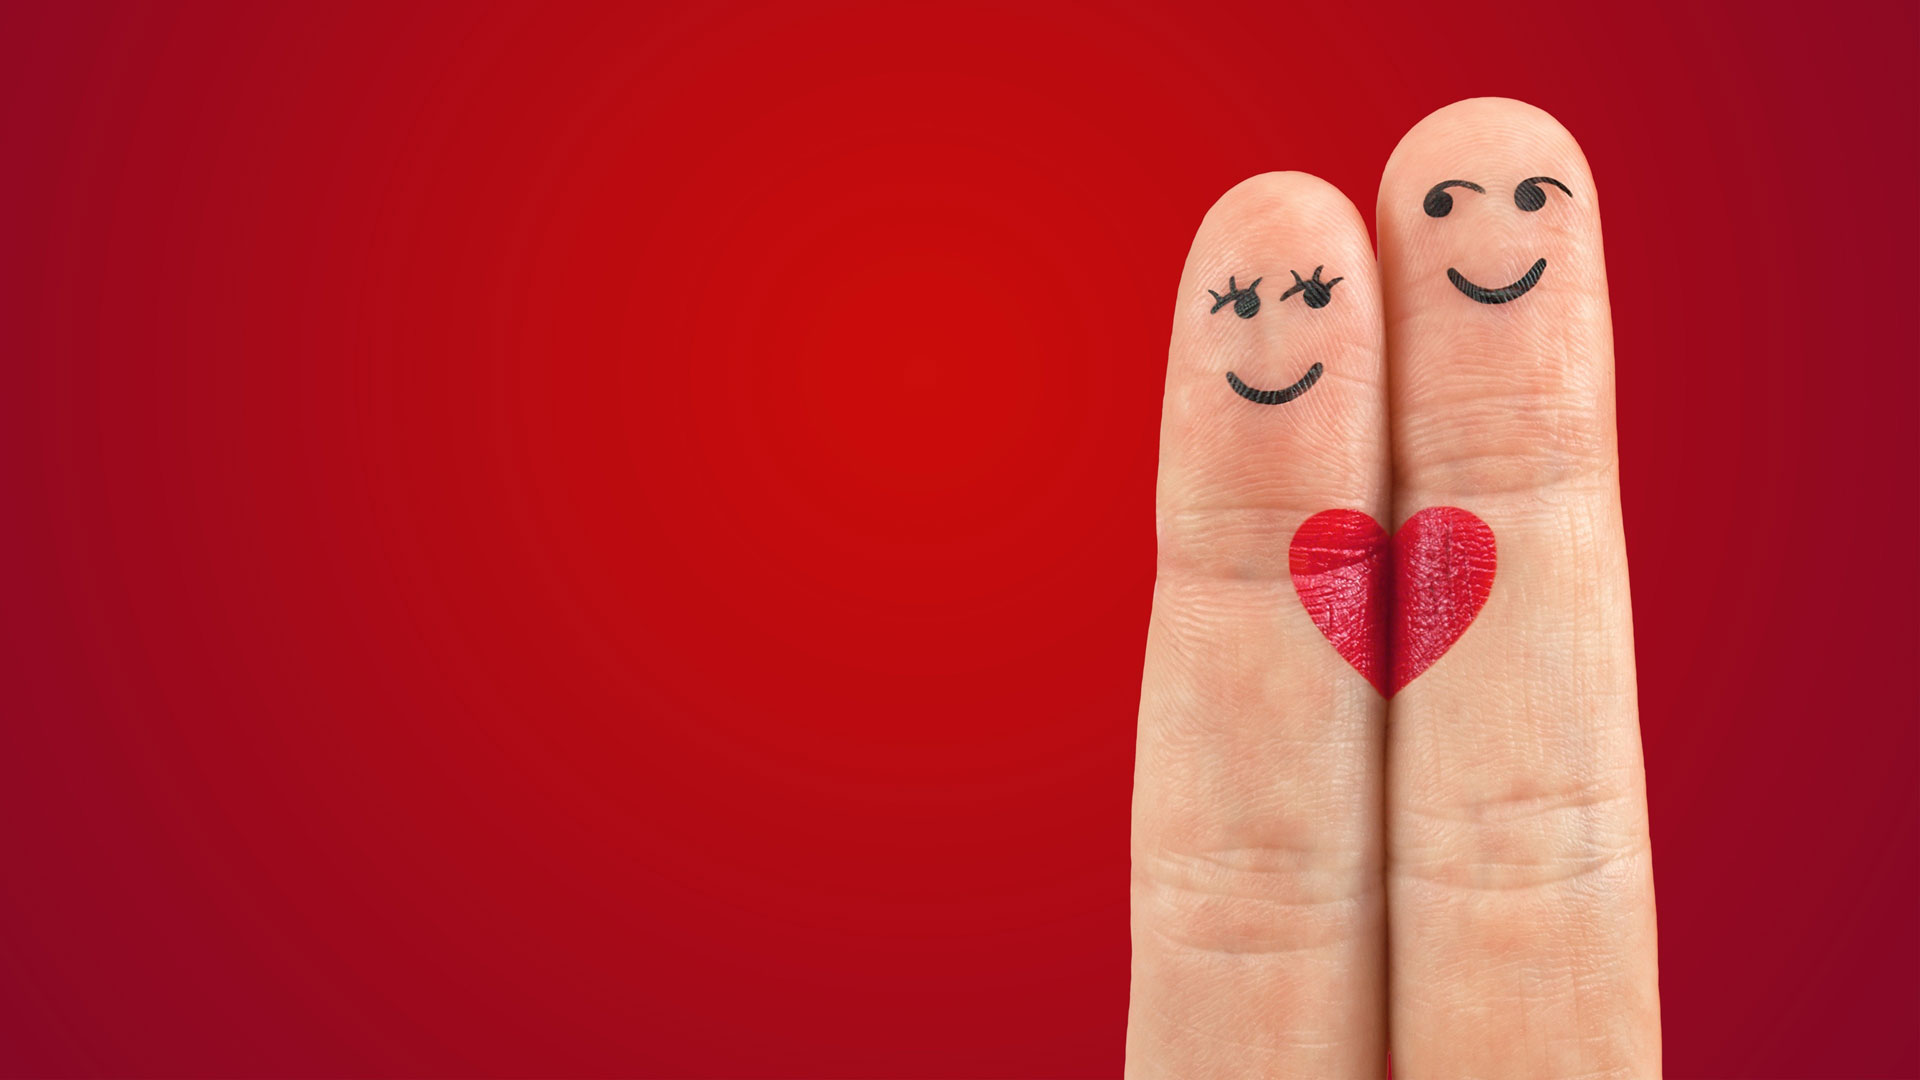 Zwei Finger mit je einem aufgemalten weiblichen und männlichen Gesicht sowie einem roten Herzen